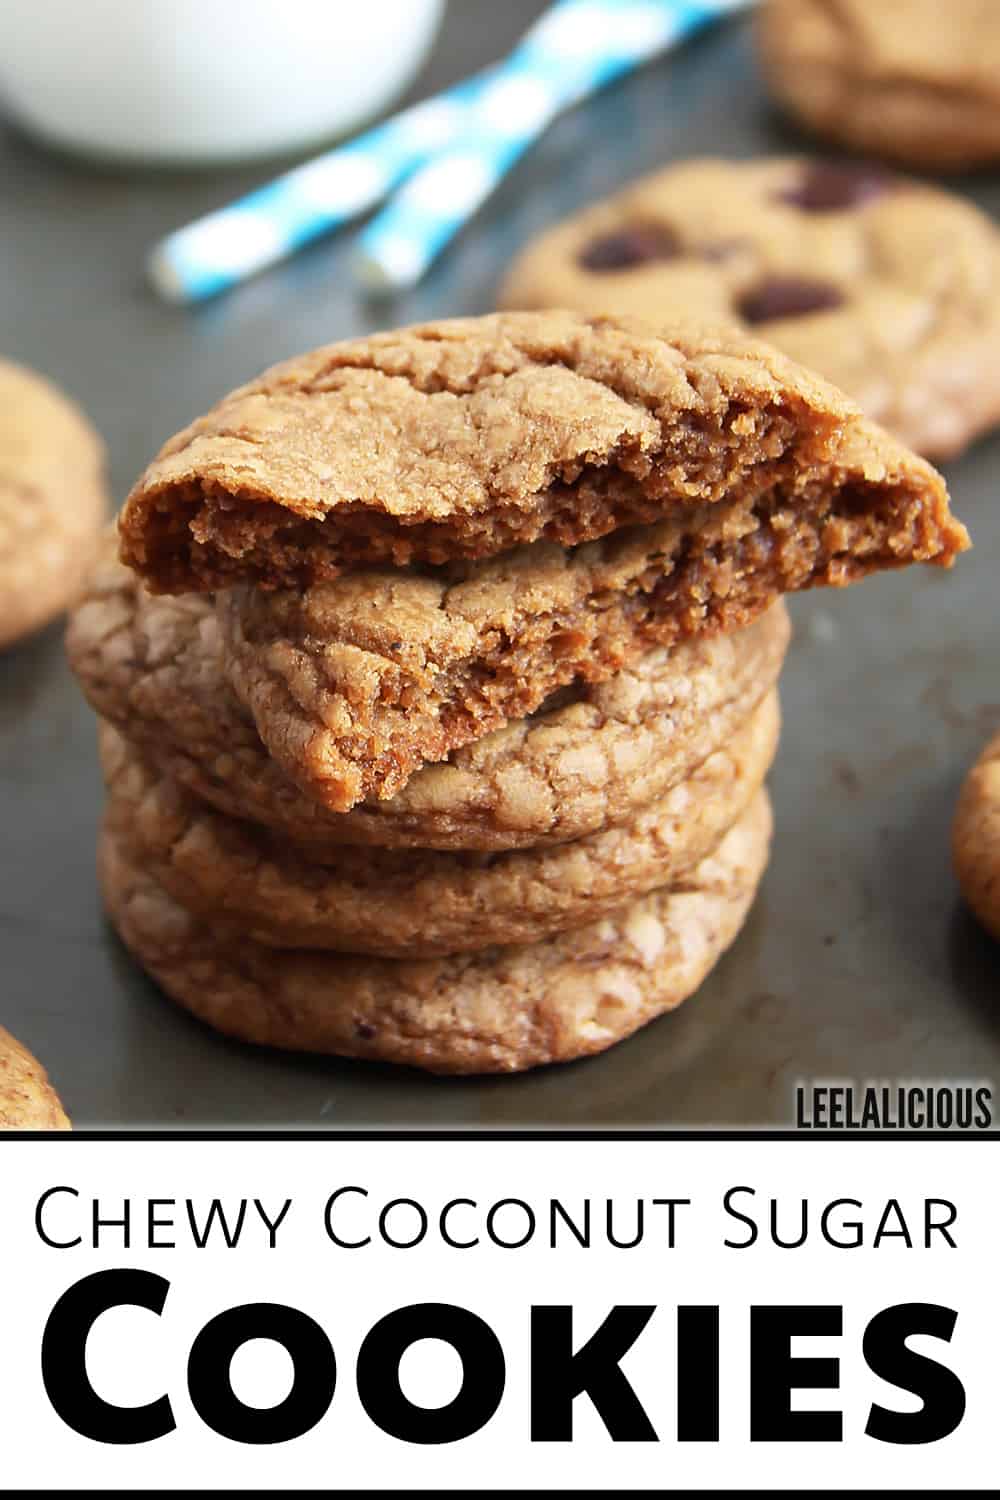 Coconut Sugar Cookies Recipe » LeelaLicious